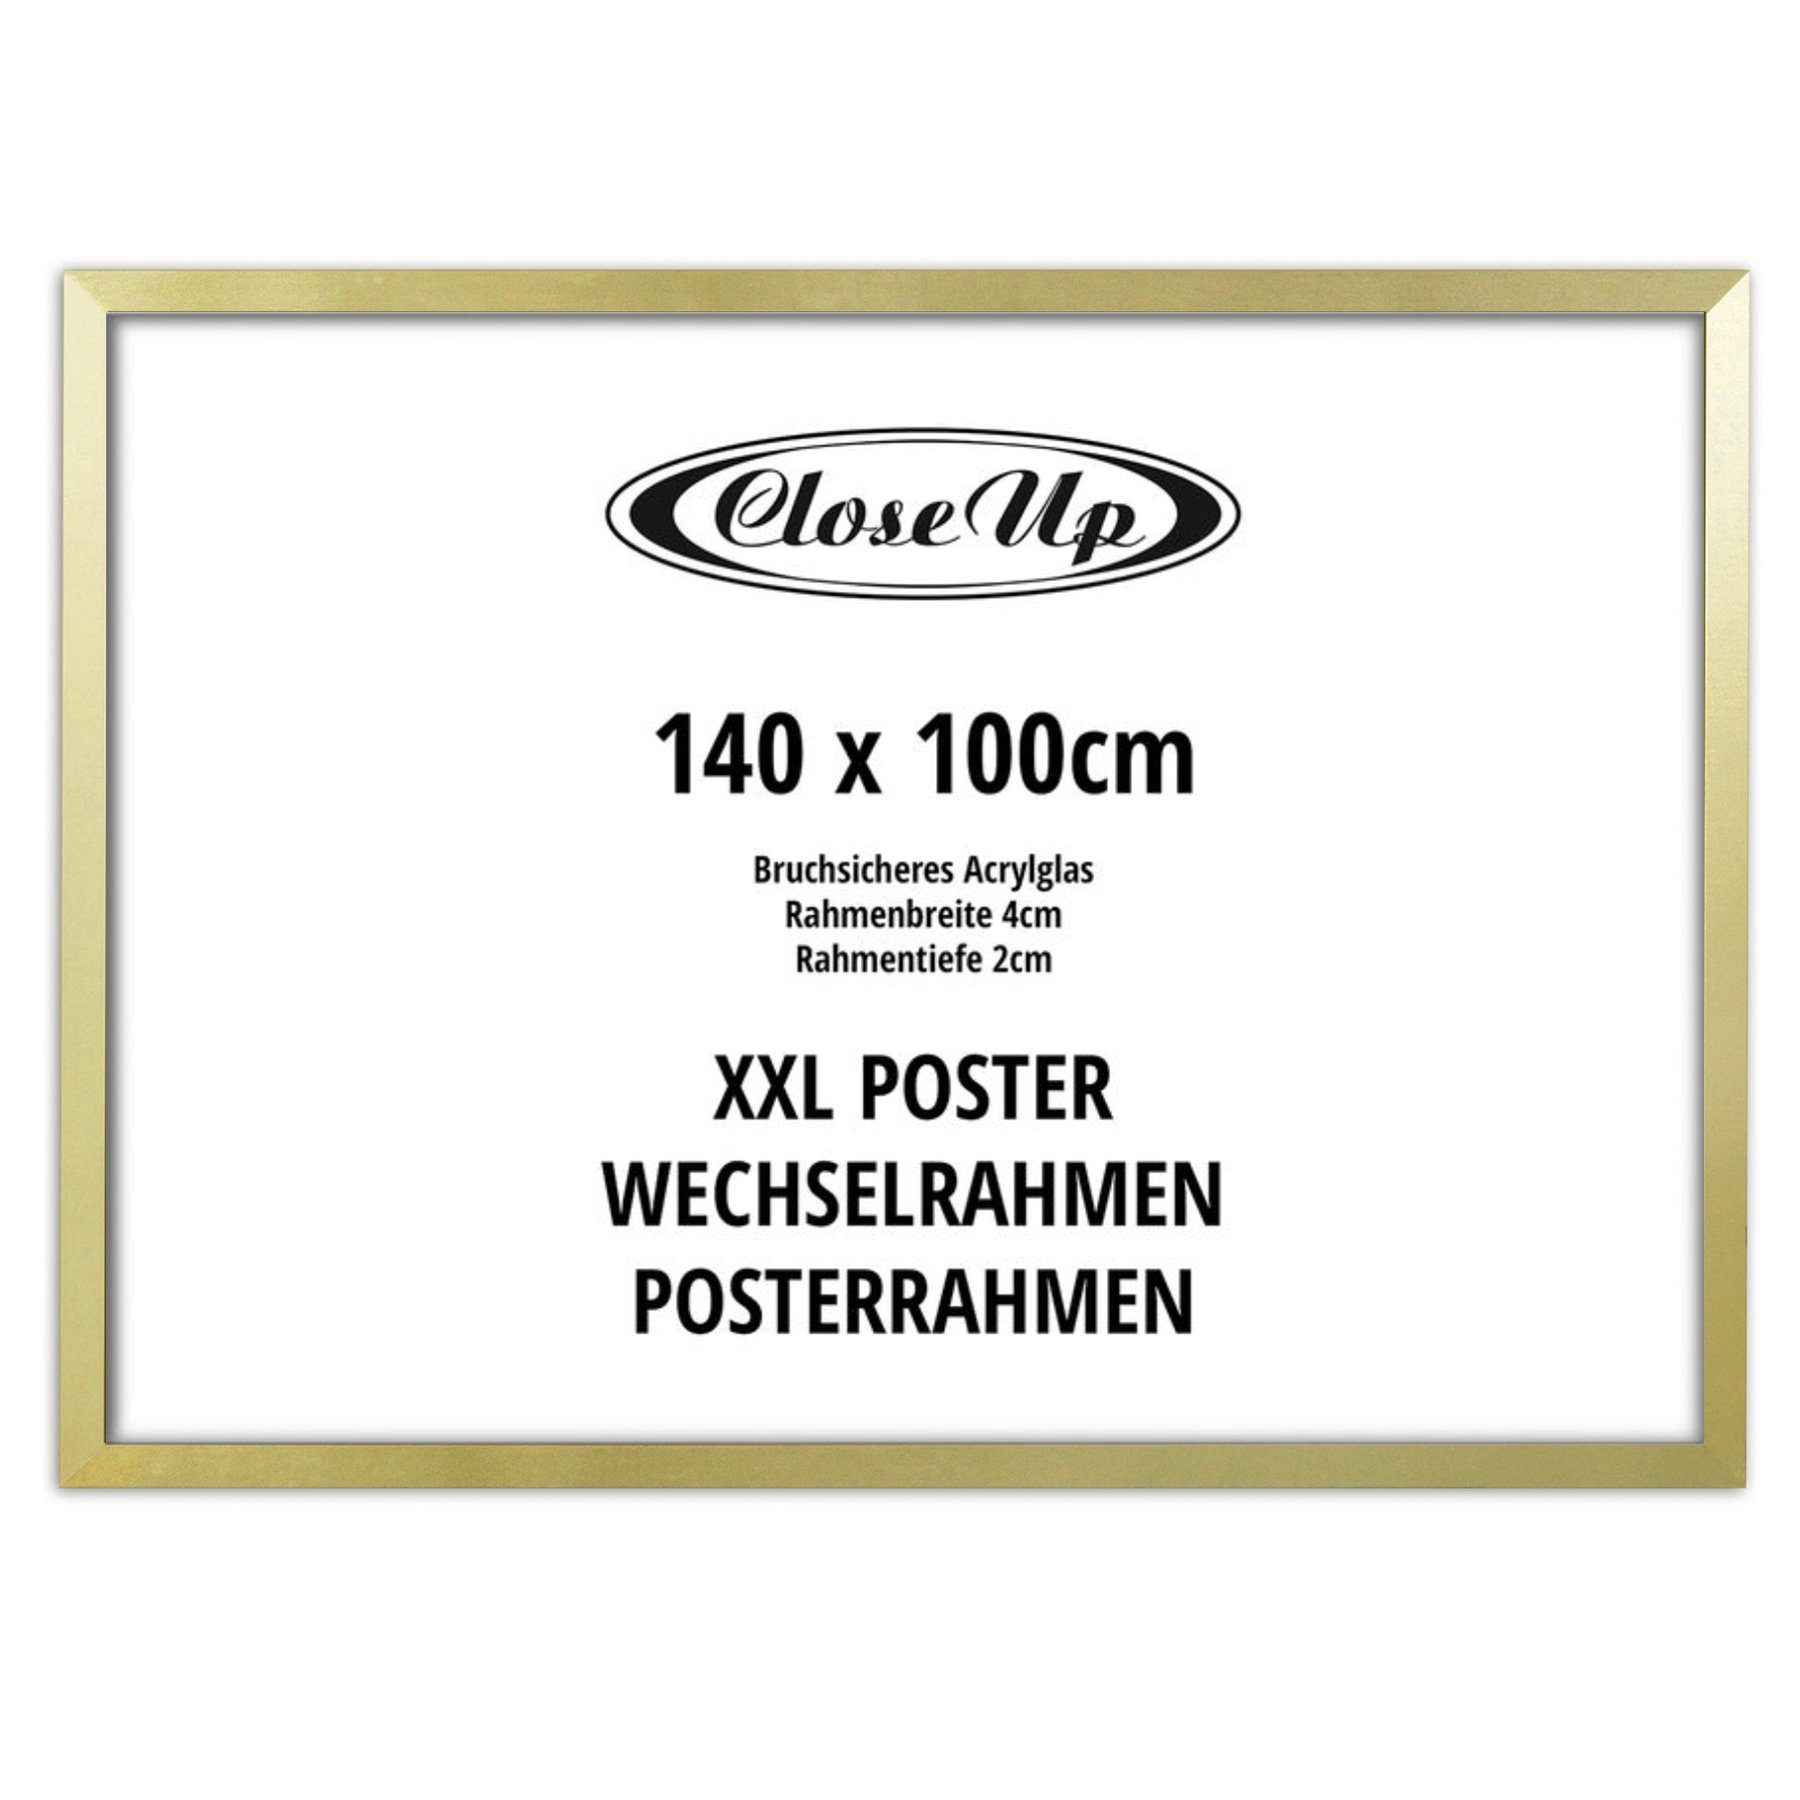 XXL Bilderrahmen Up x 140cm Close Posterrahmen gold 100